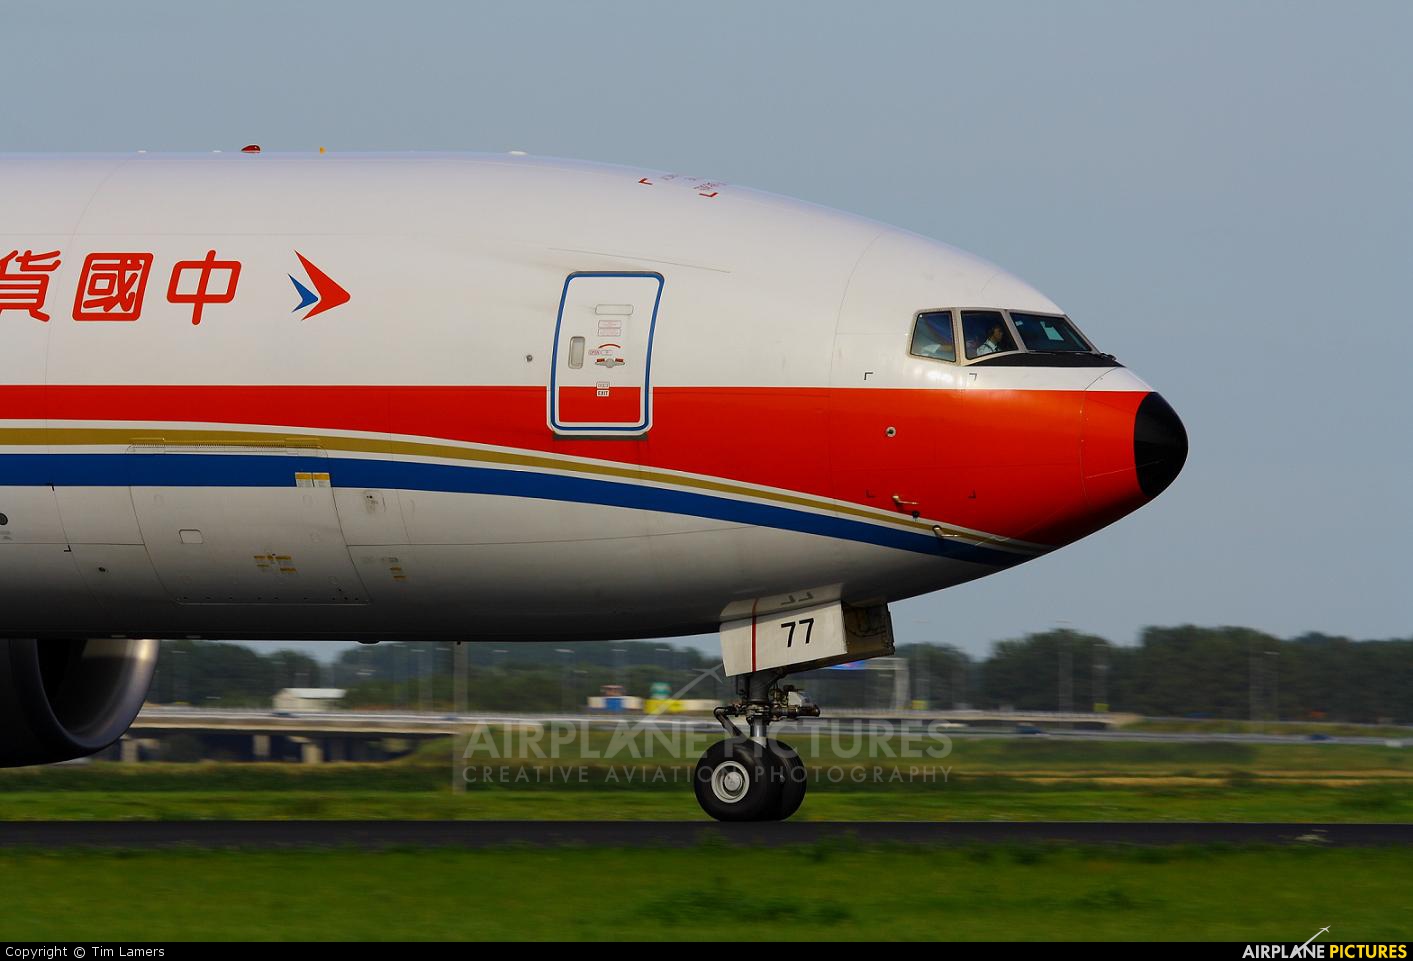 China Cargo B-2077 aircraft at Amsterdam - Schiphol